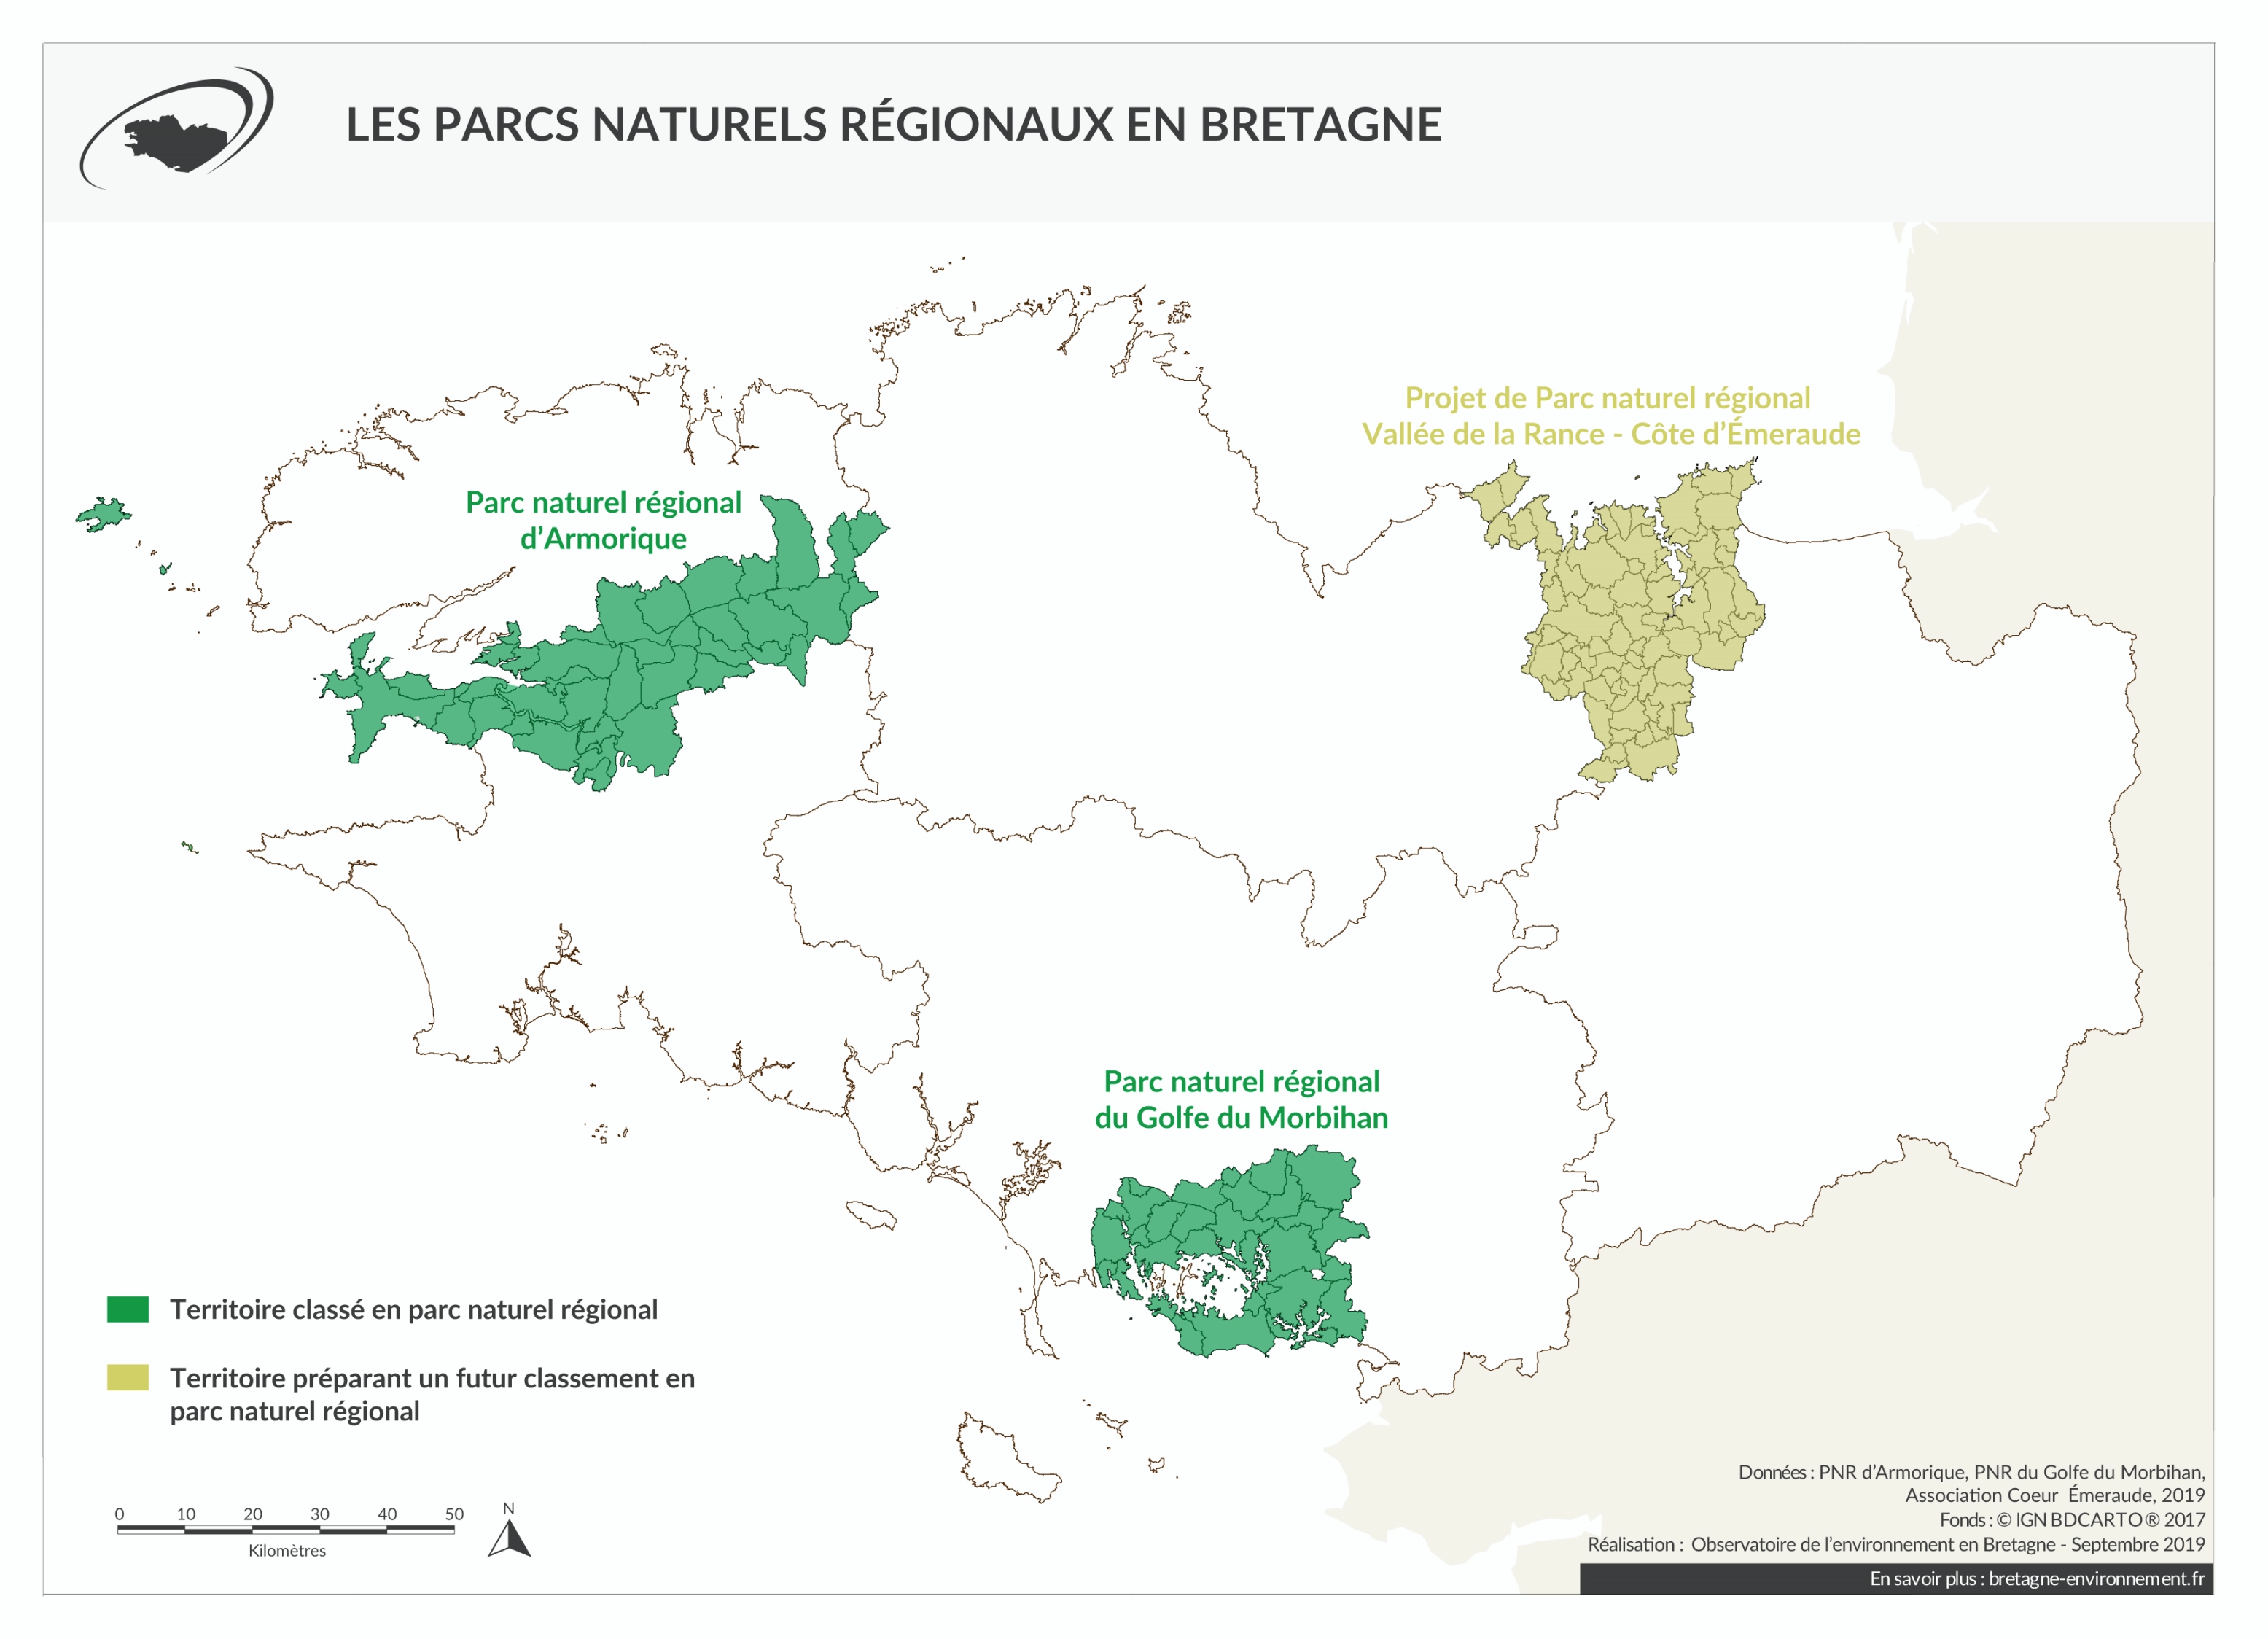 Etat d'avancement du classement des parcs naturels régionaux bretons